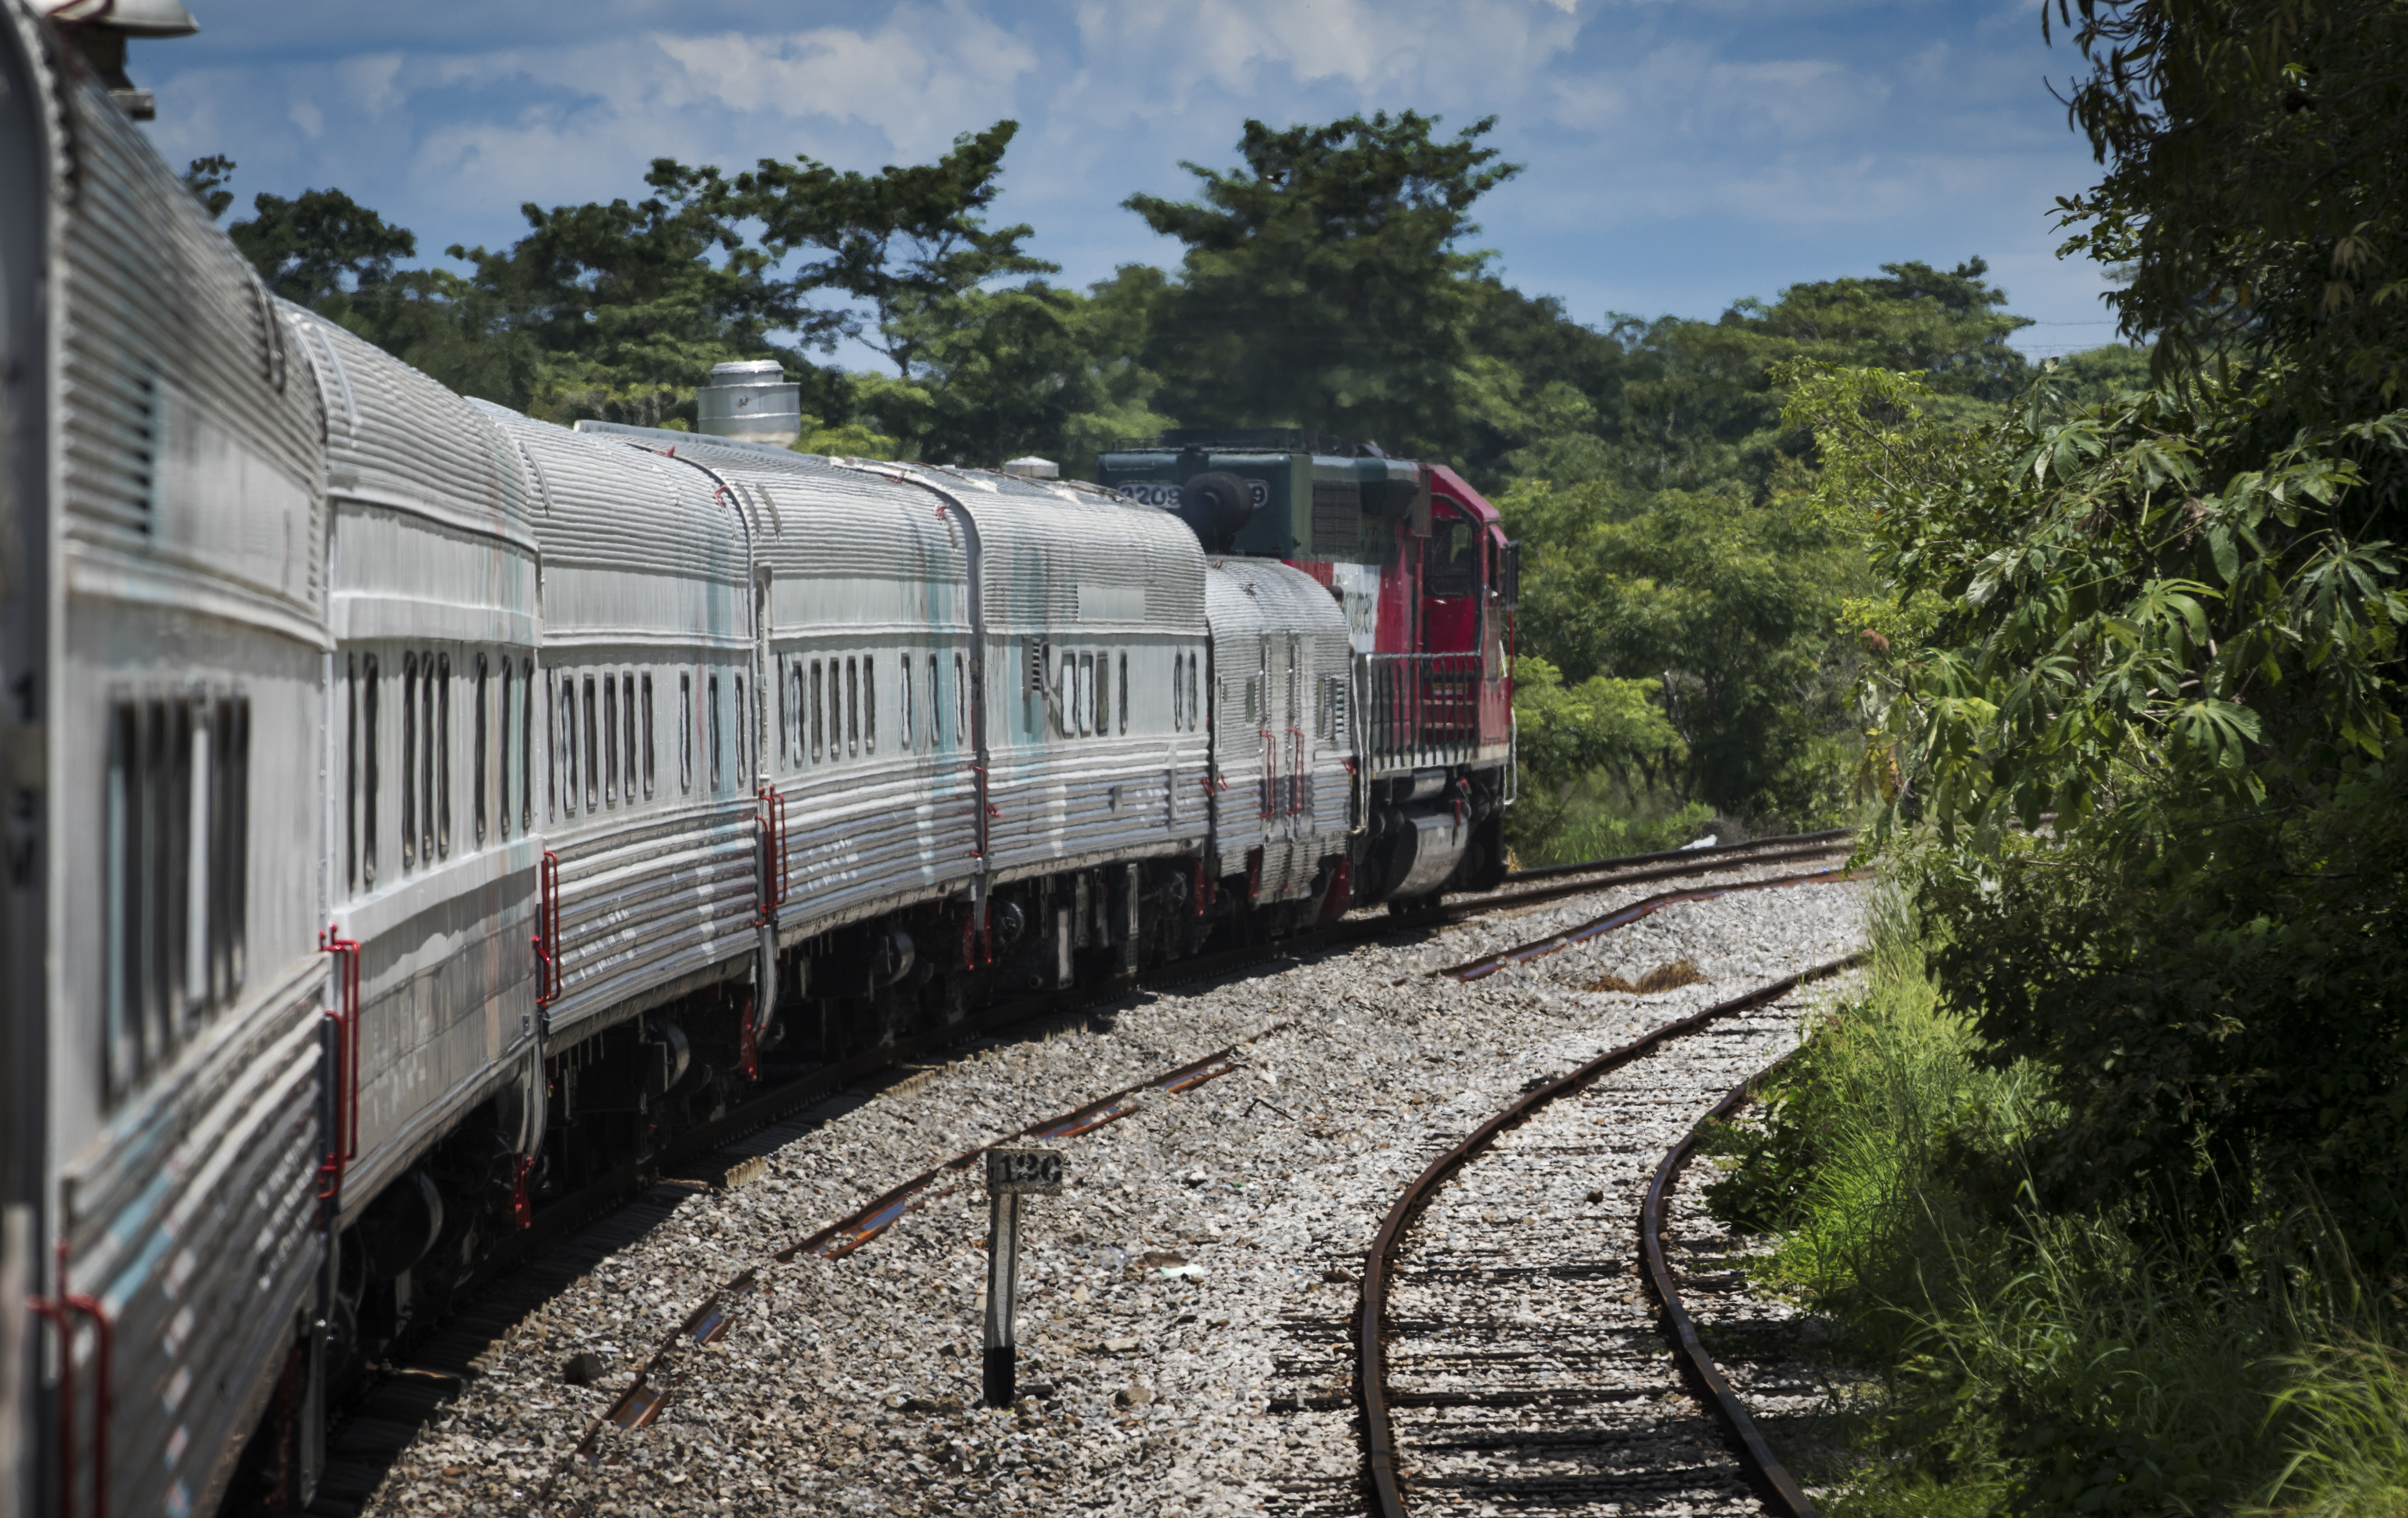 En el periodo enero-mayo de 2020 se movilizaron por ferrocarril un total de 49.55 millones de toneladas netas de carga